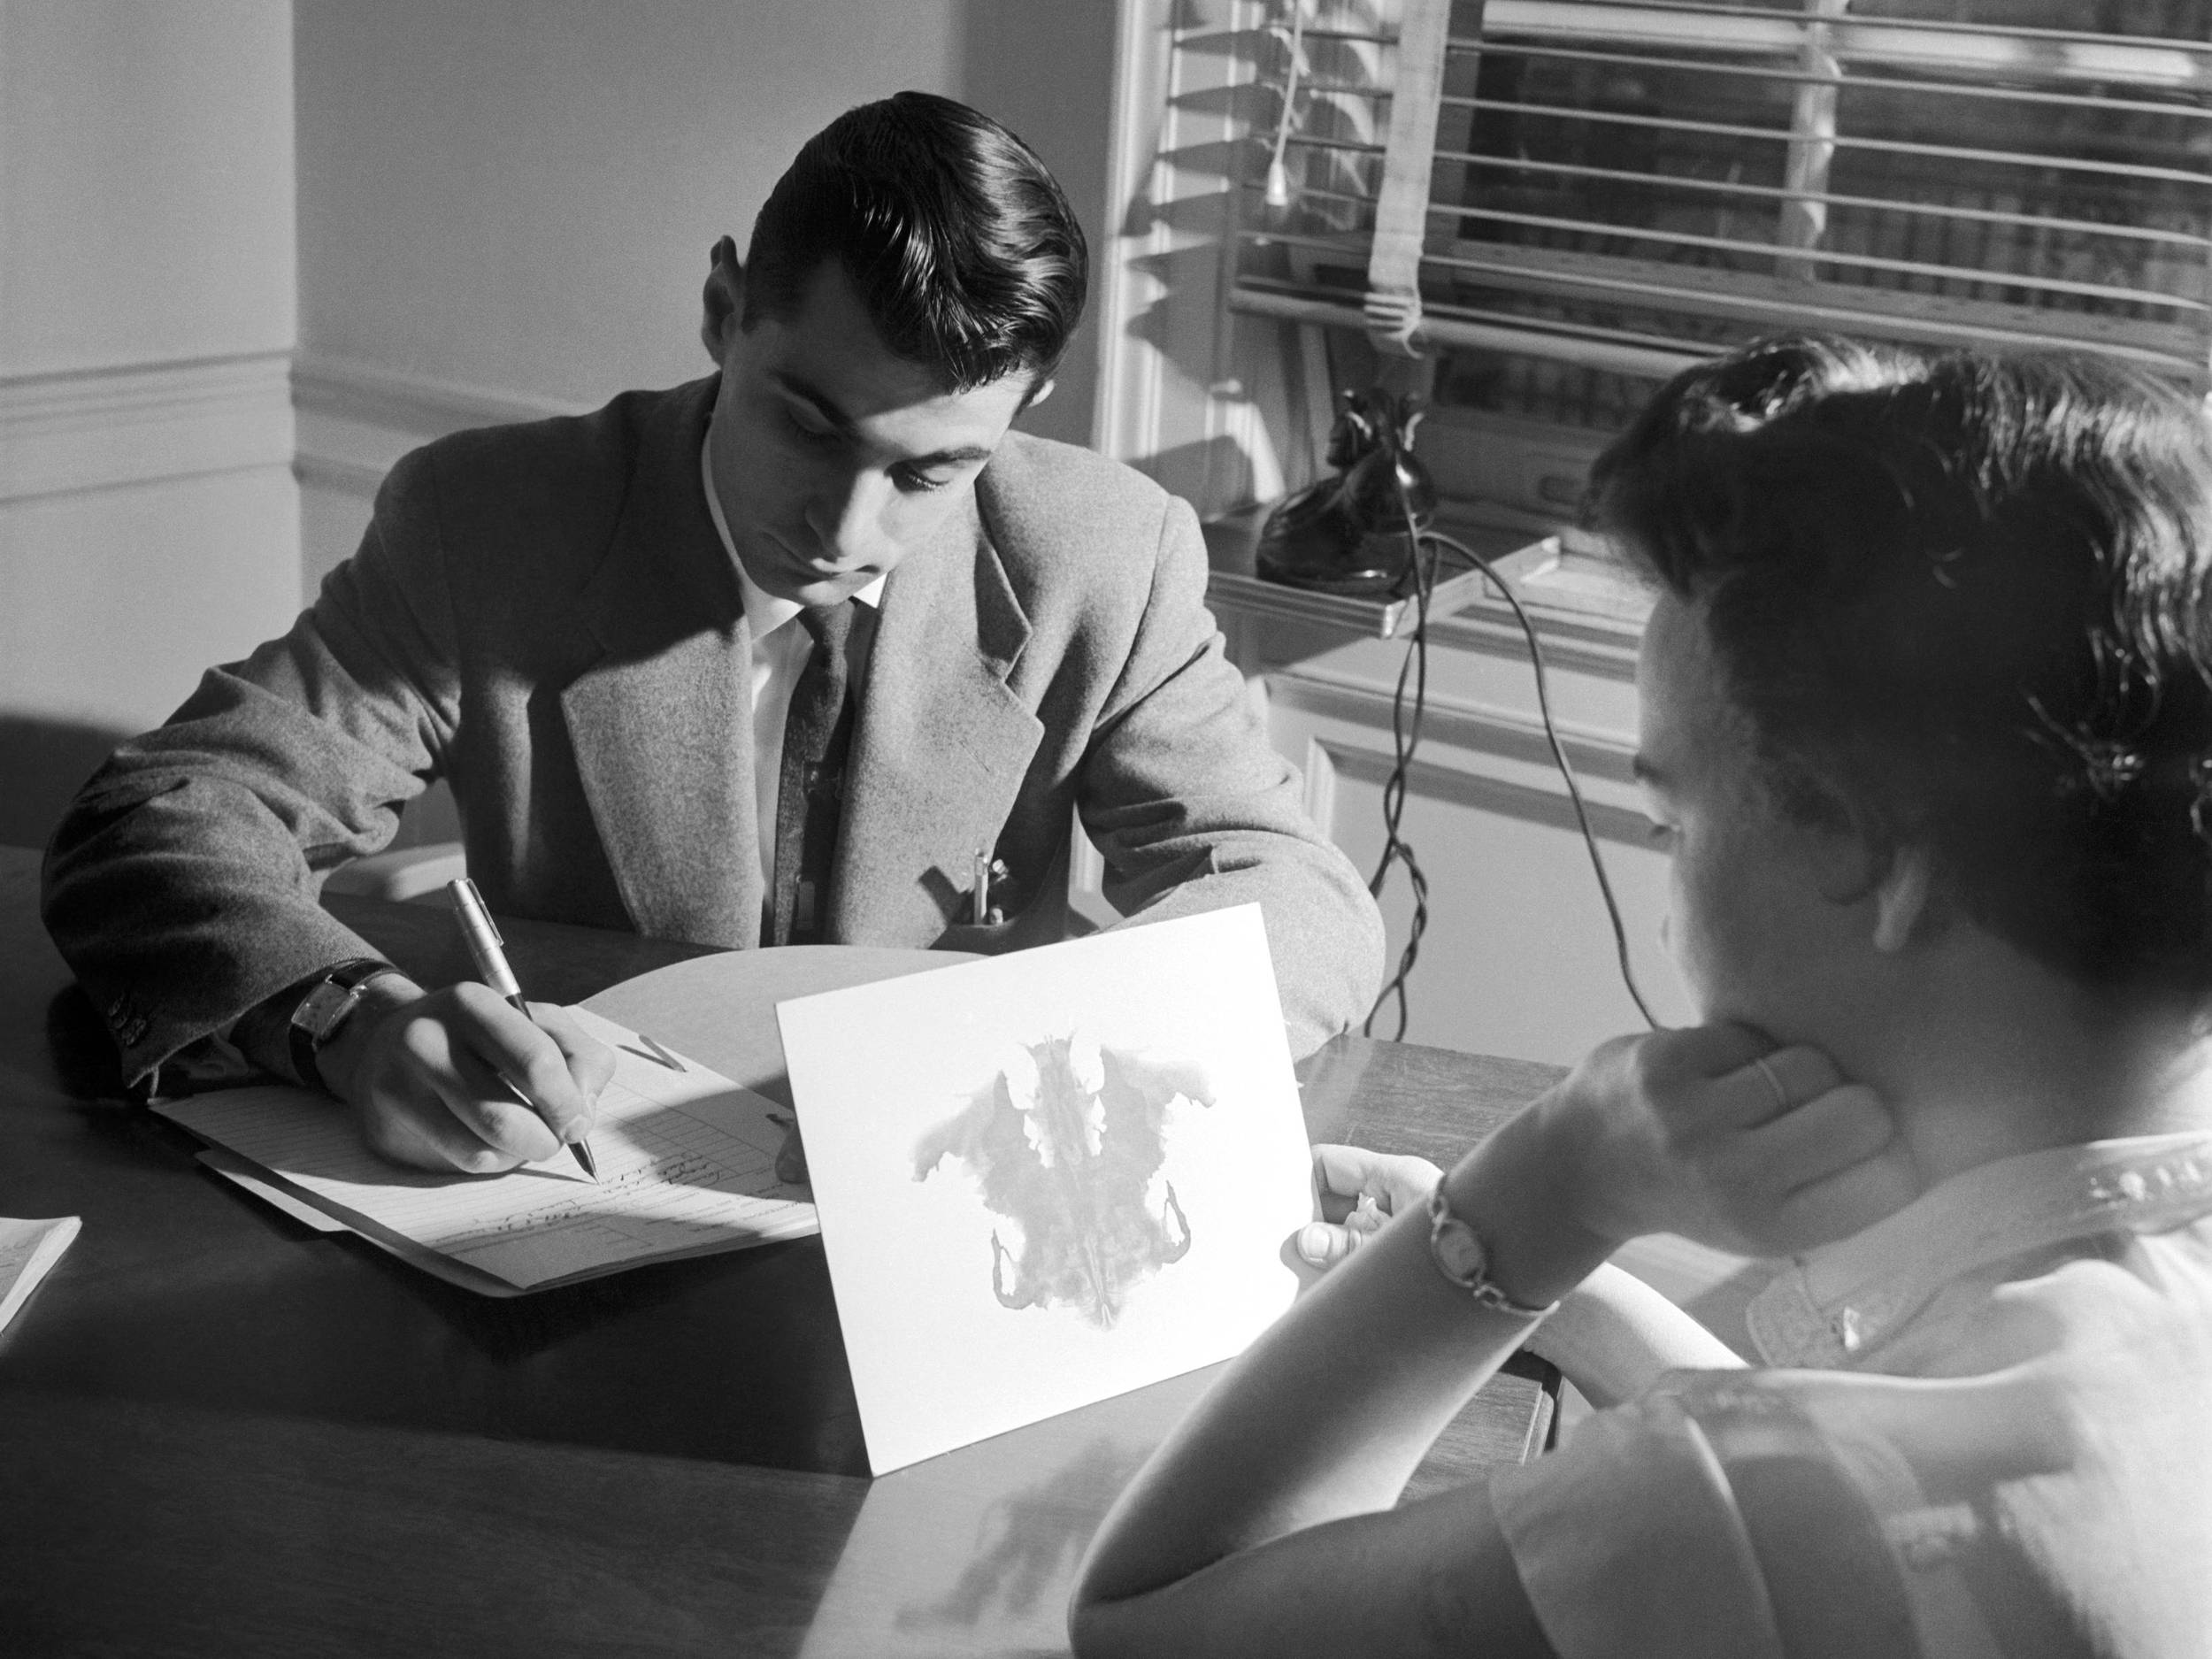 Fotografie, schwarz-weiß, um 1950: Das Foto zeigt einen Mann und eine Frau an einem Tisch sitzend. Der Mann schreibt, sein Blick ist gesenkt. Die Frau betrachtet ein Tinten-Kleks-Bild